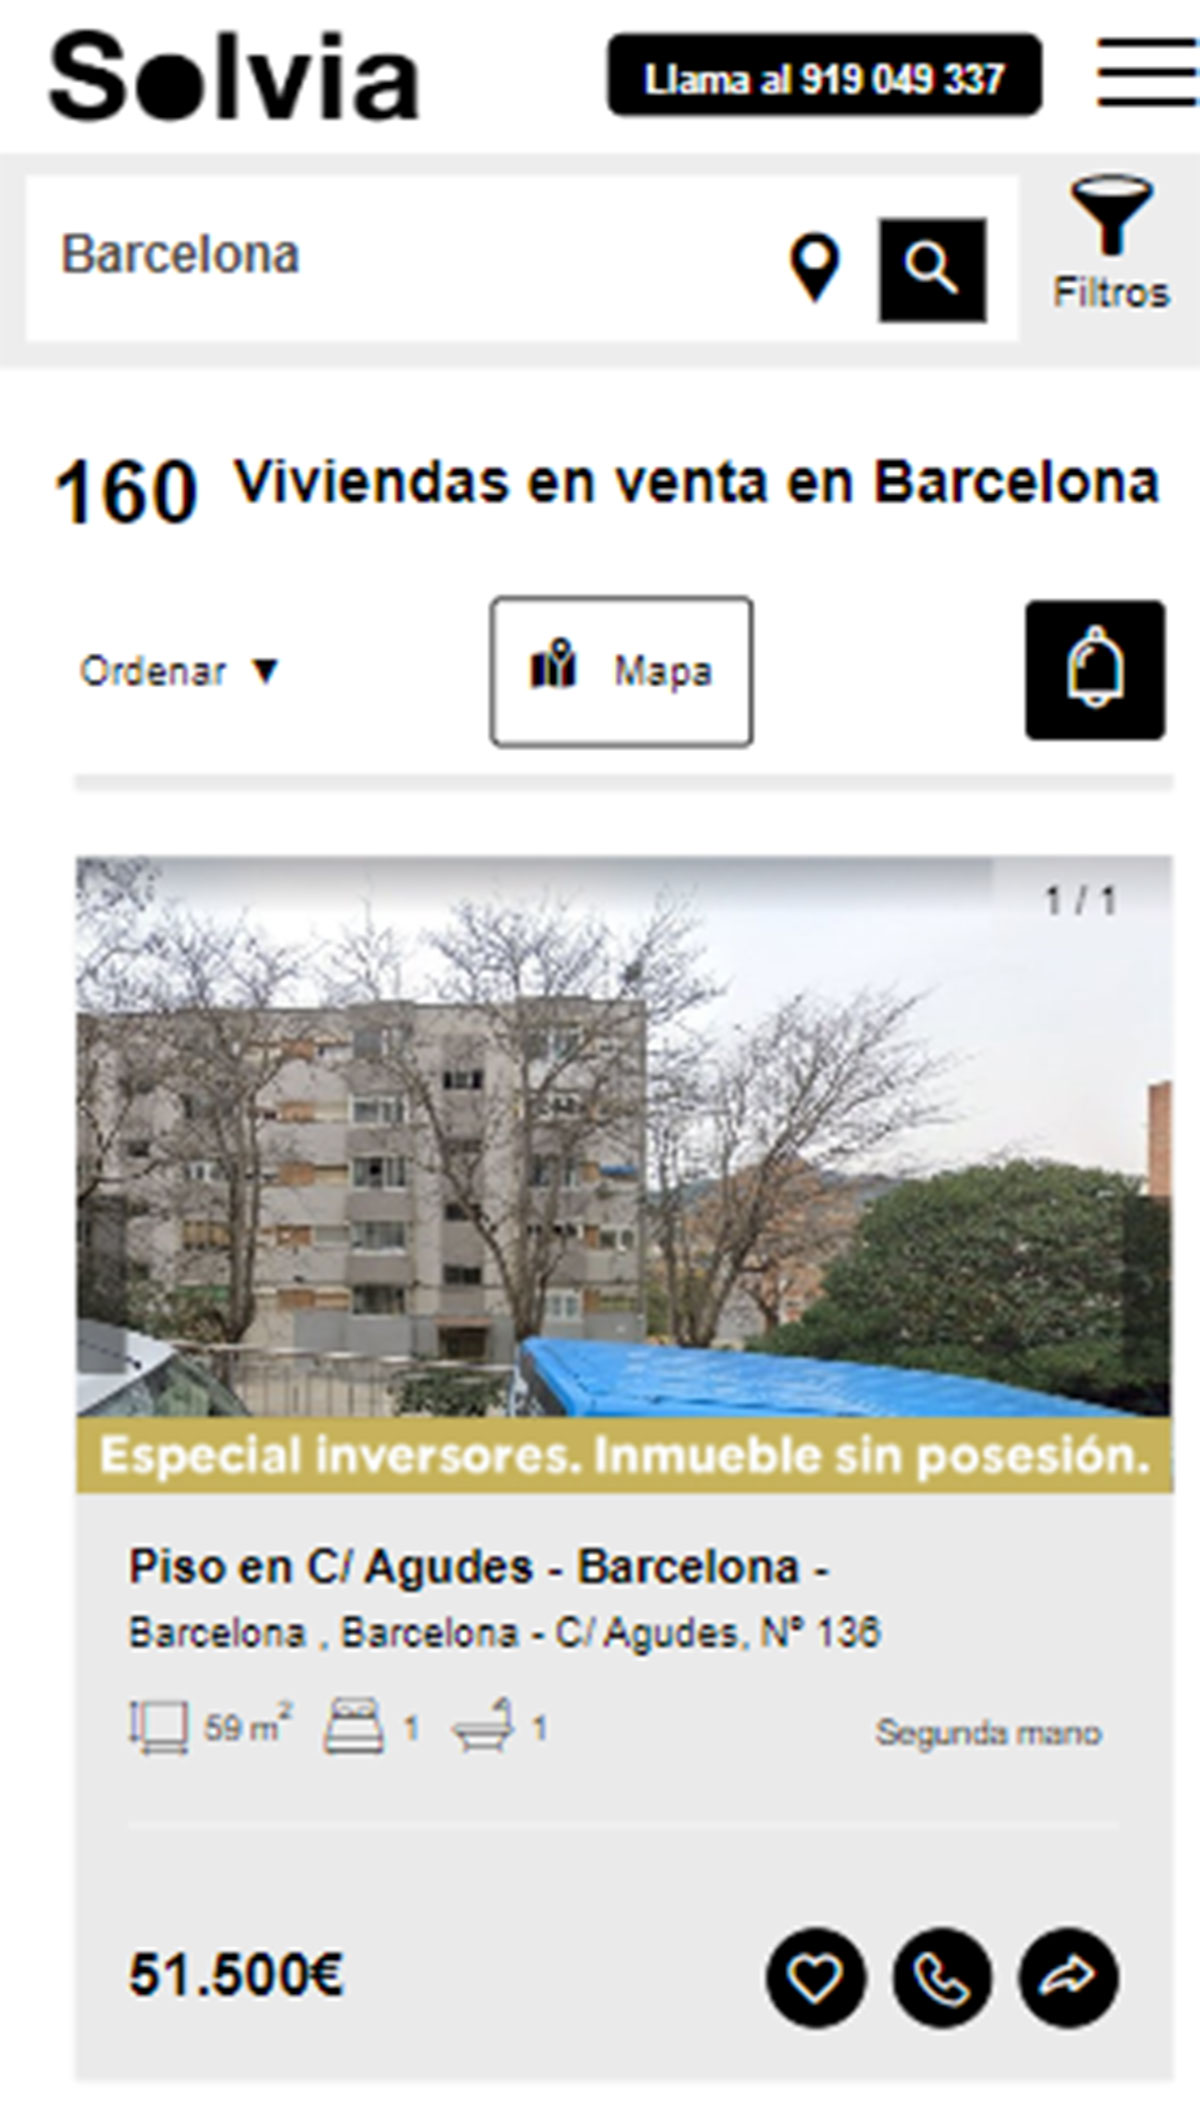 Piso en la ciudad de Barcelona por 51.500 euros